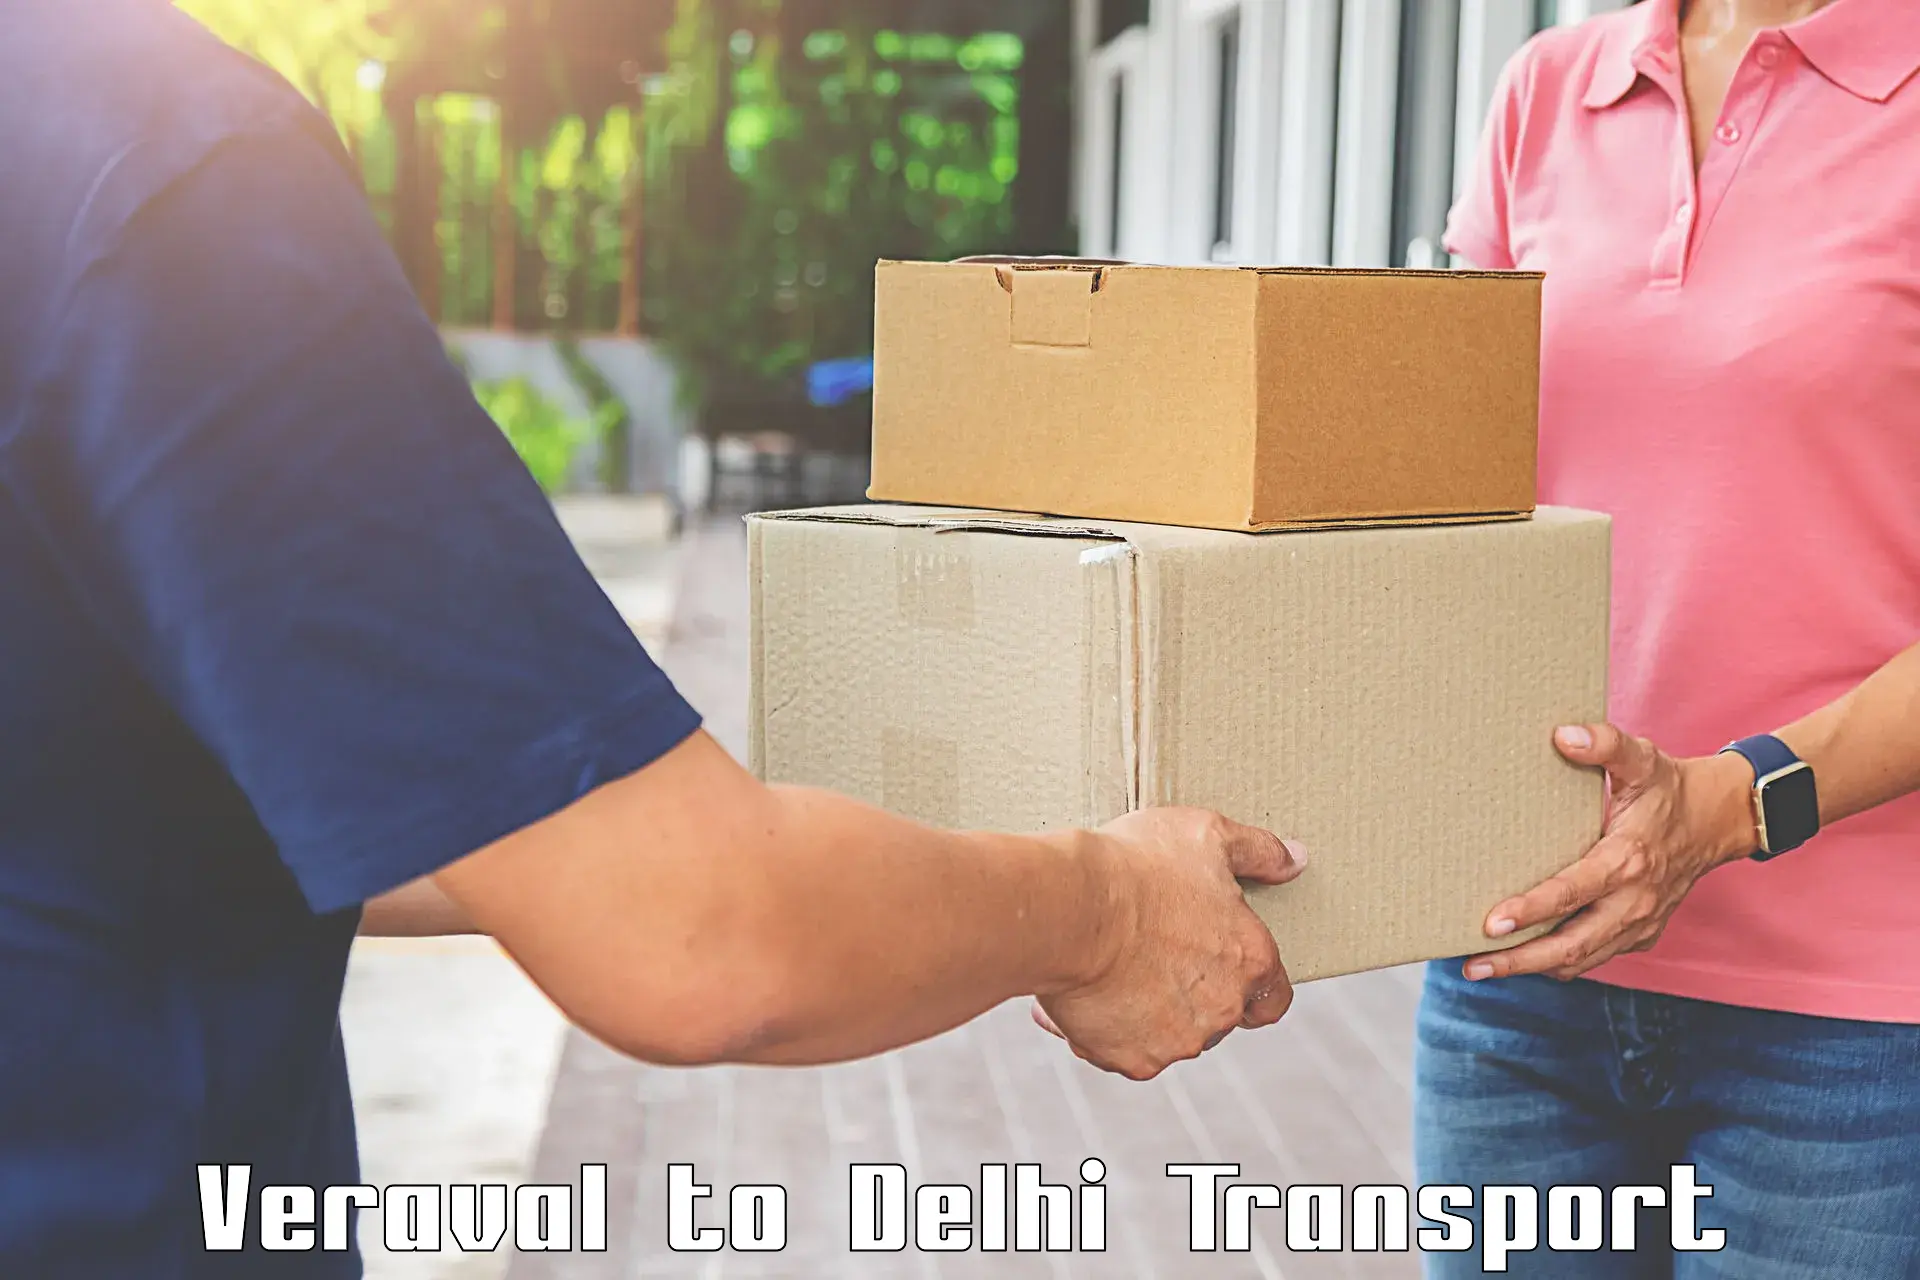 Container transport service Veraval to Kalkaji